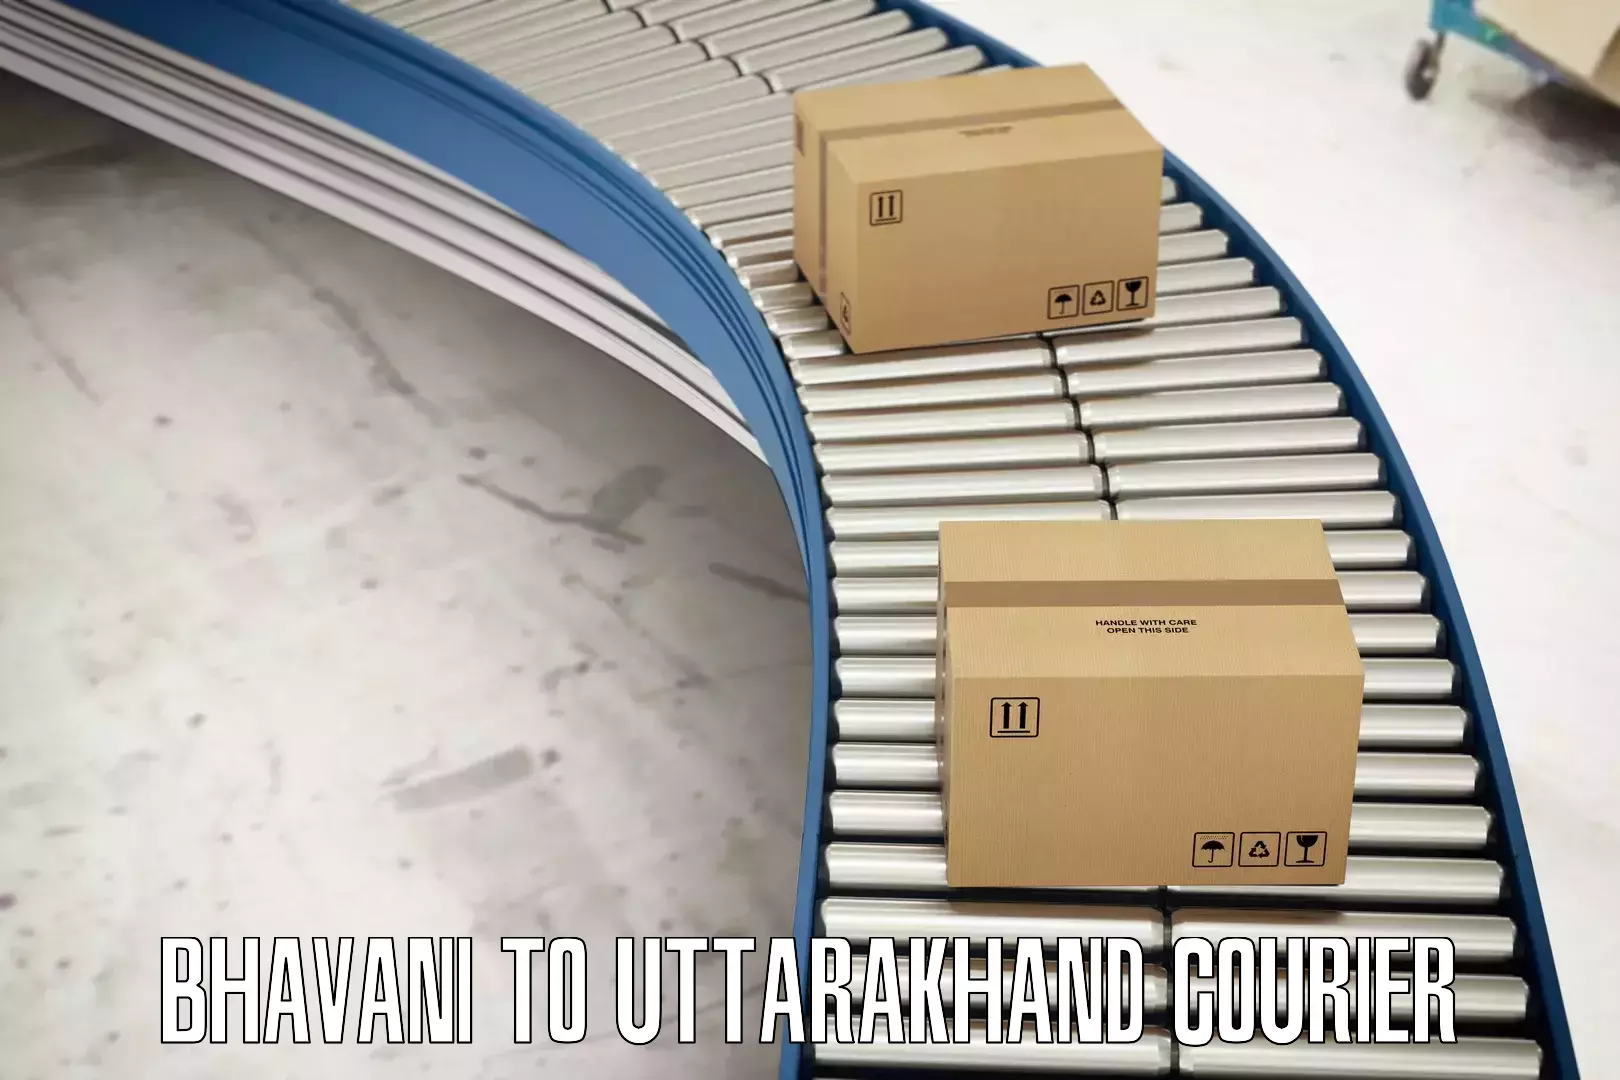 Quality courier partnerships Bhavani to Uttarakhand